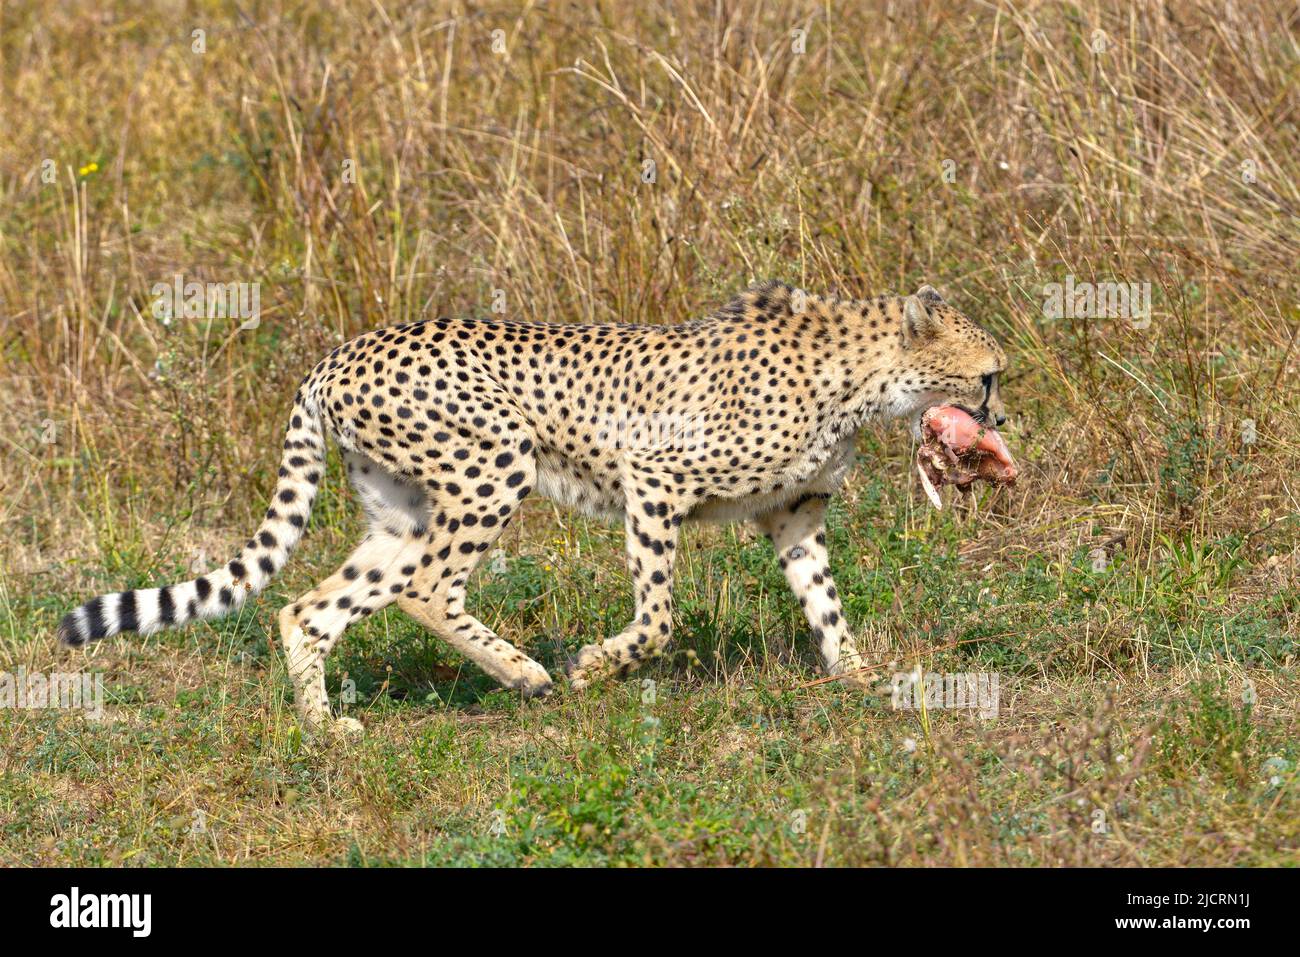 Profil Afrikanischer Gepard (Acinonyx jubatus), der auf Gras läuft und Fleisch im Mund hat Stockfoto